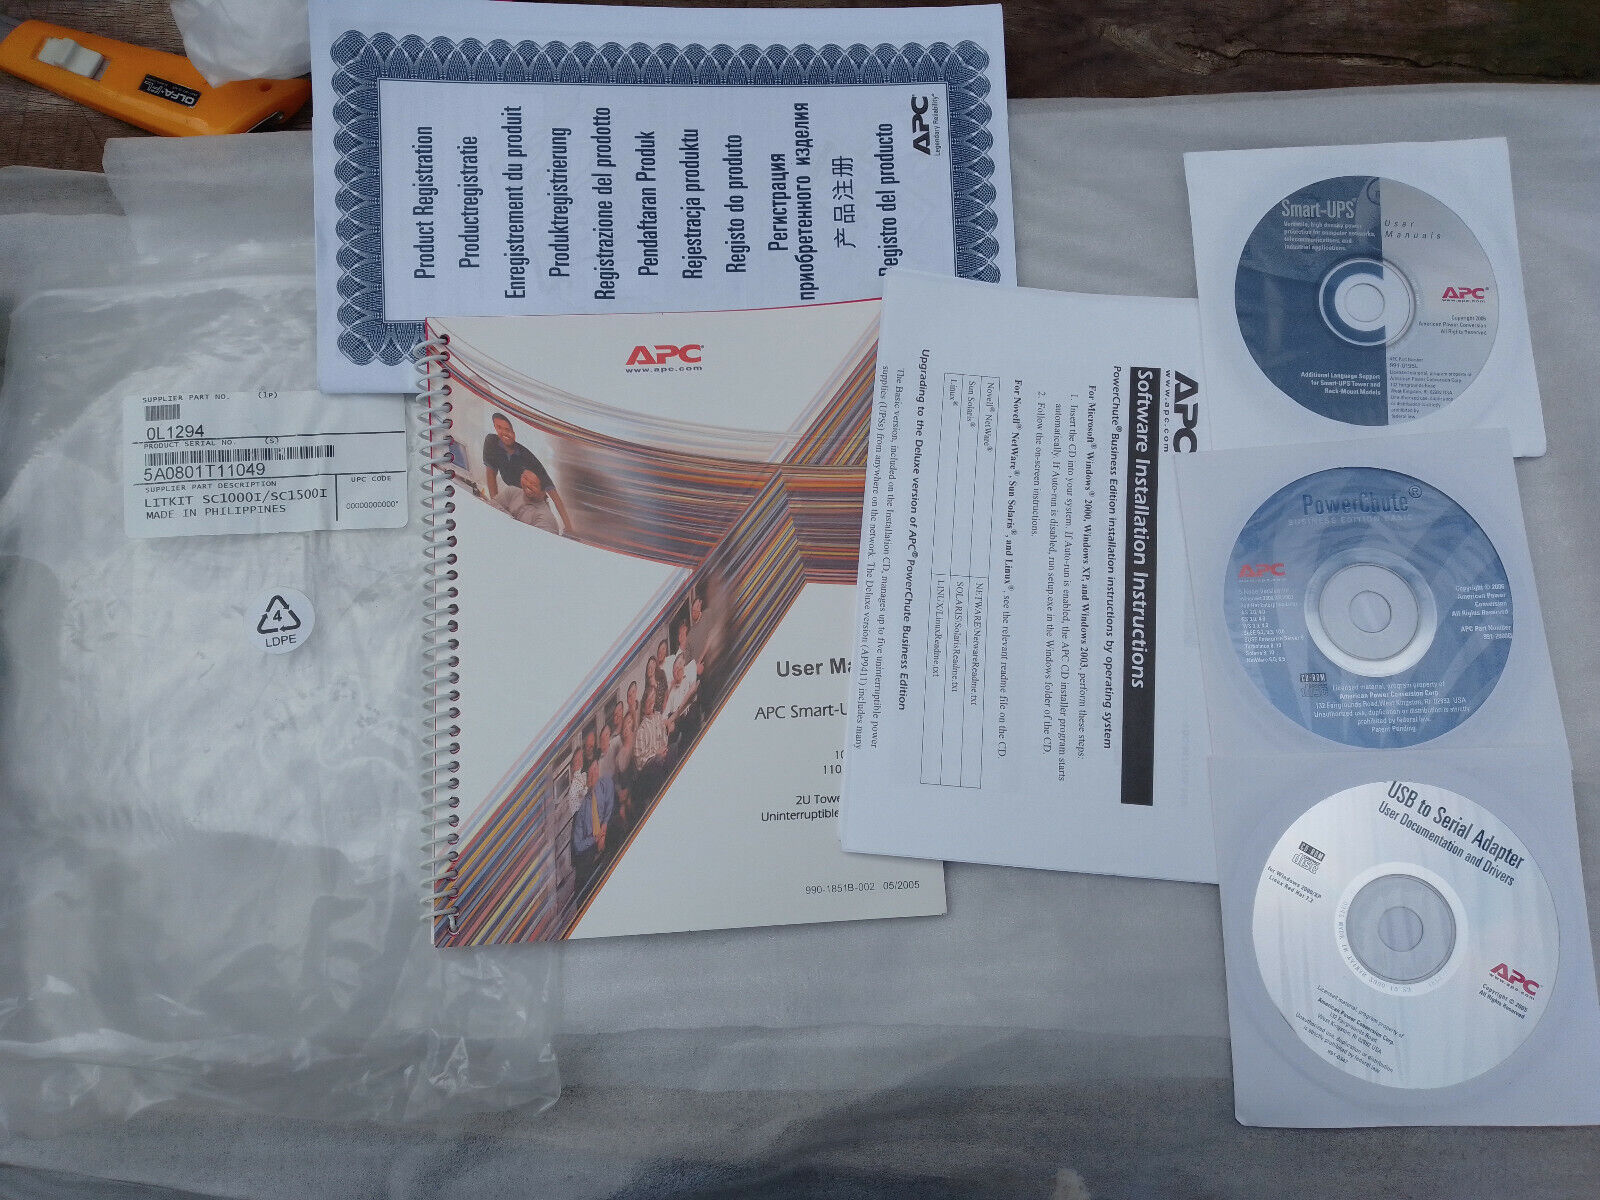 APC Smart-UPS SC Manual Instructions + CDs LITKIT SC1000I SC1500I 5A0801T11049